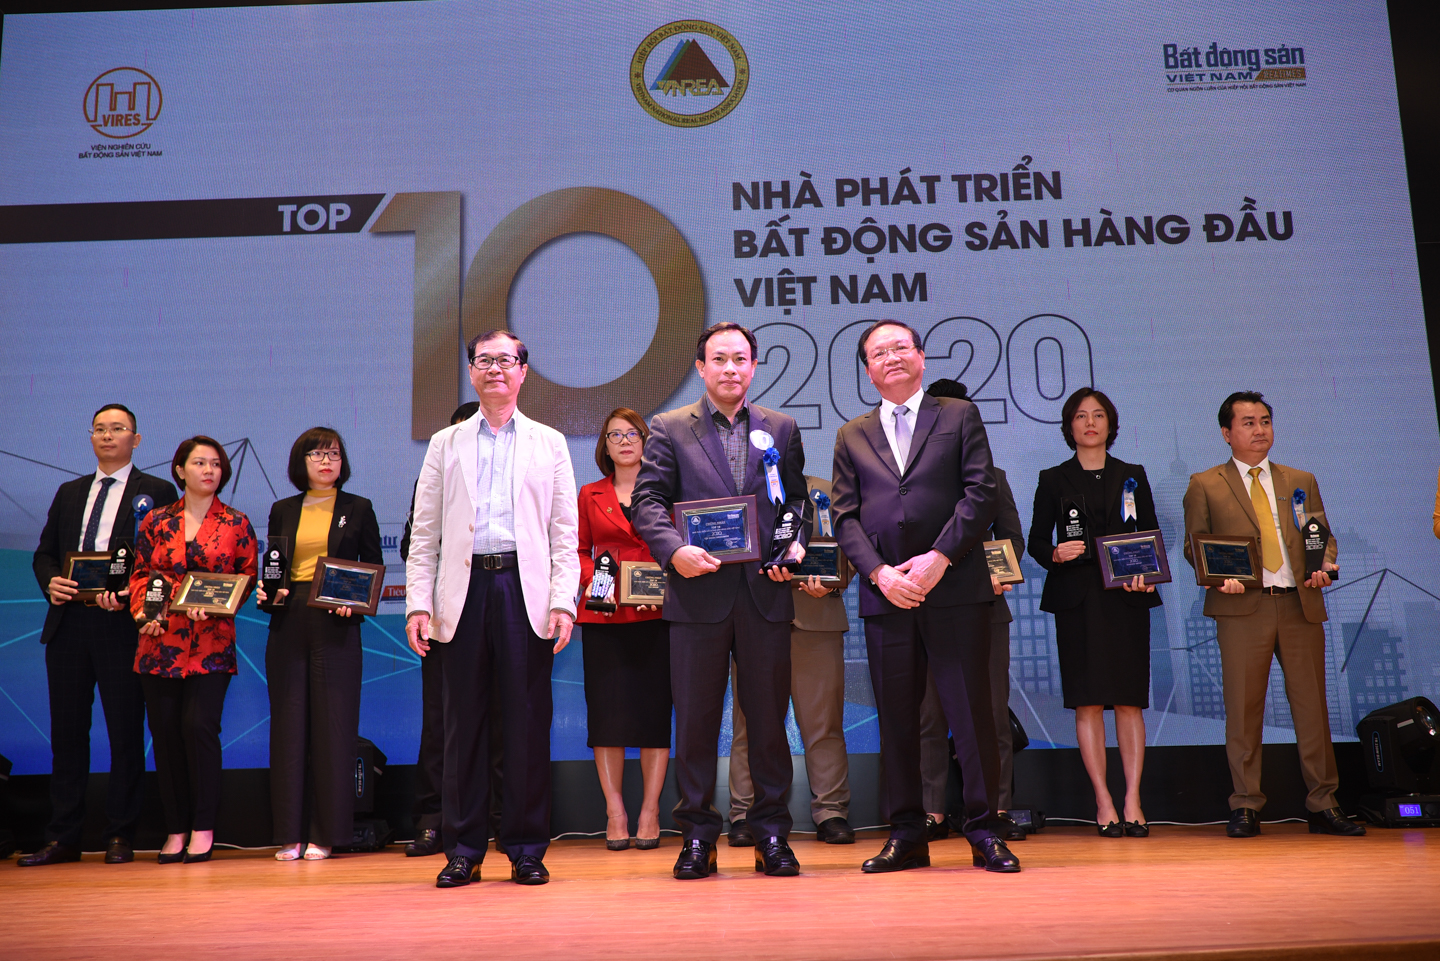 Đại diện Tập đoàn Geleximco nhận phần thưởng Top 10 nhà phát triển bất động sản hàng đầu Việt Nam 2020.